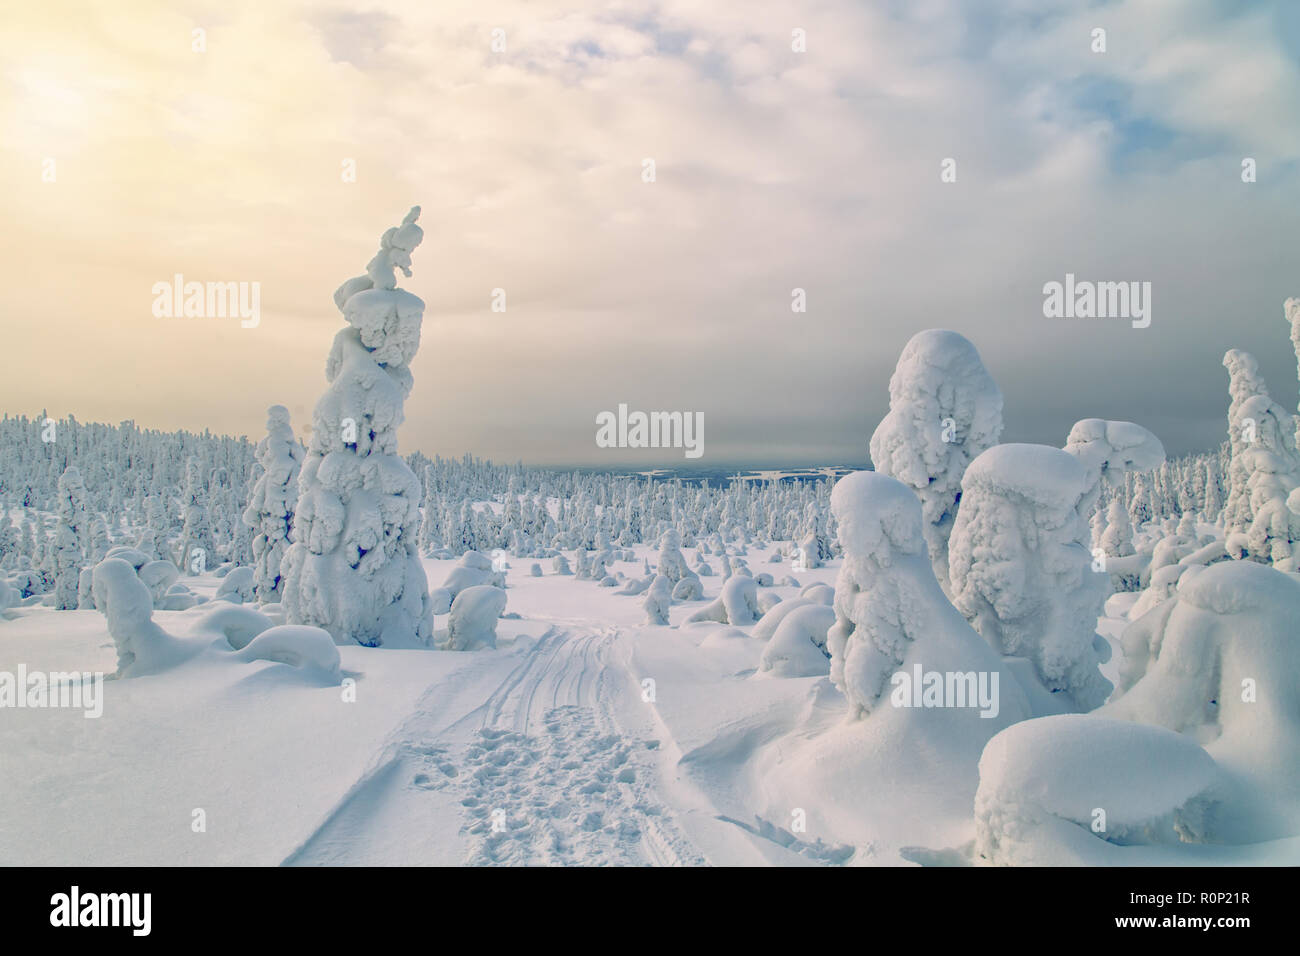 Herrliche Winterlandschaft mit Schnee bedeckten Bäumen. Norden Karelien, Russland. Stockfoto